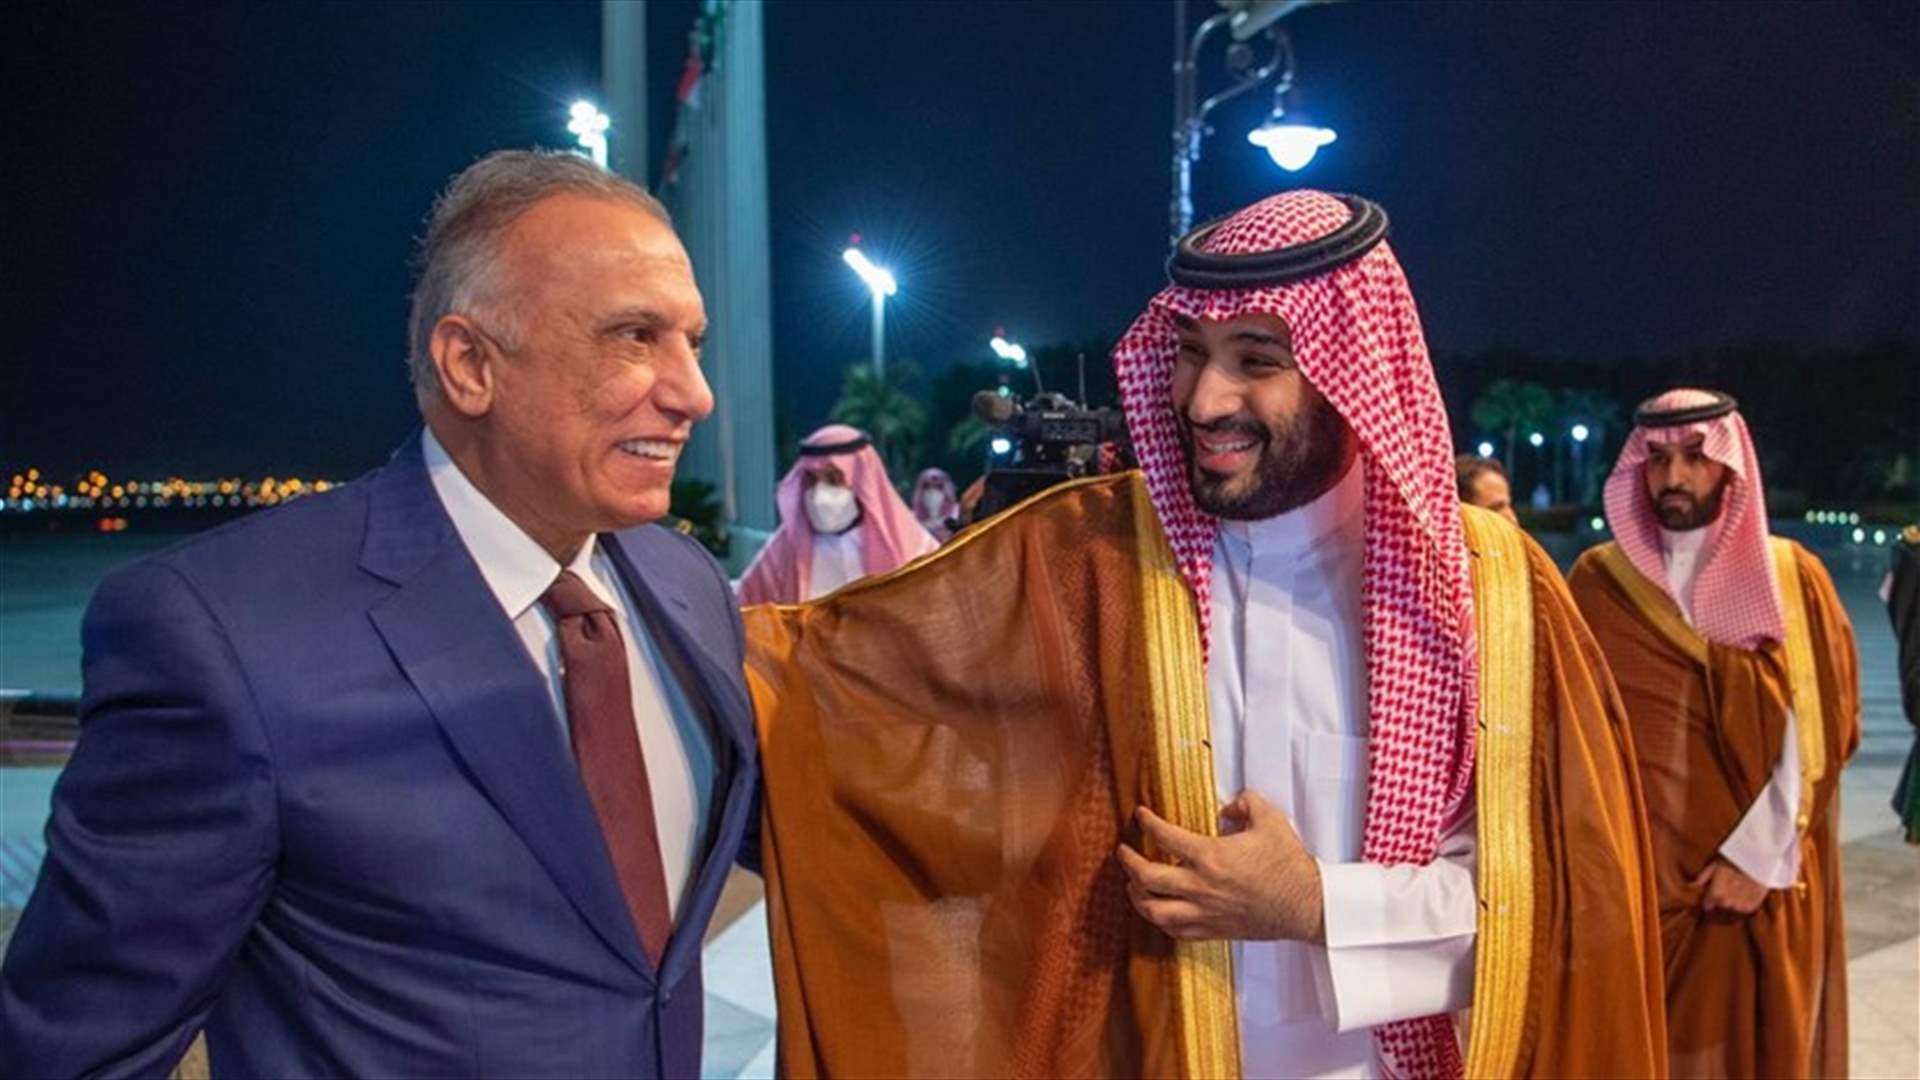 ولي العهد السعودي الامير محمد بن سلمان يستقبل رئيس الوزراء العراقي مصطفى الكاظمي لدى وصوله إلى السعودية